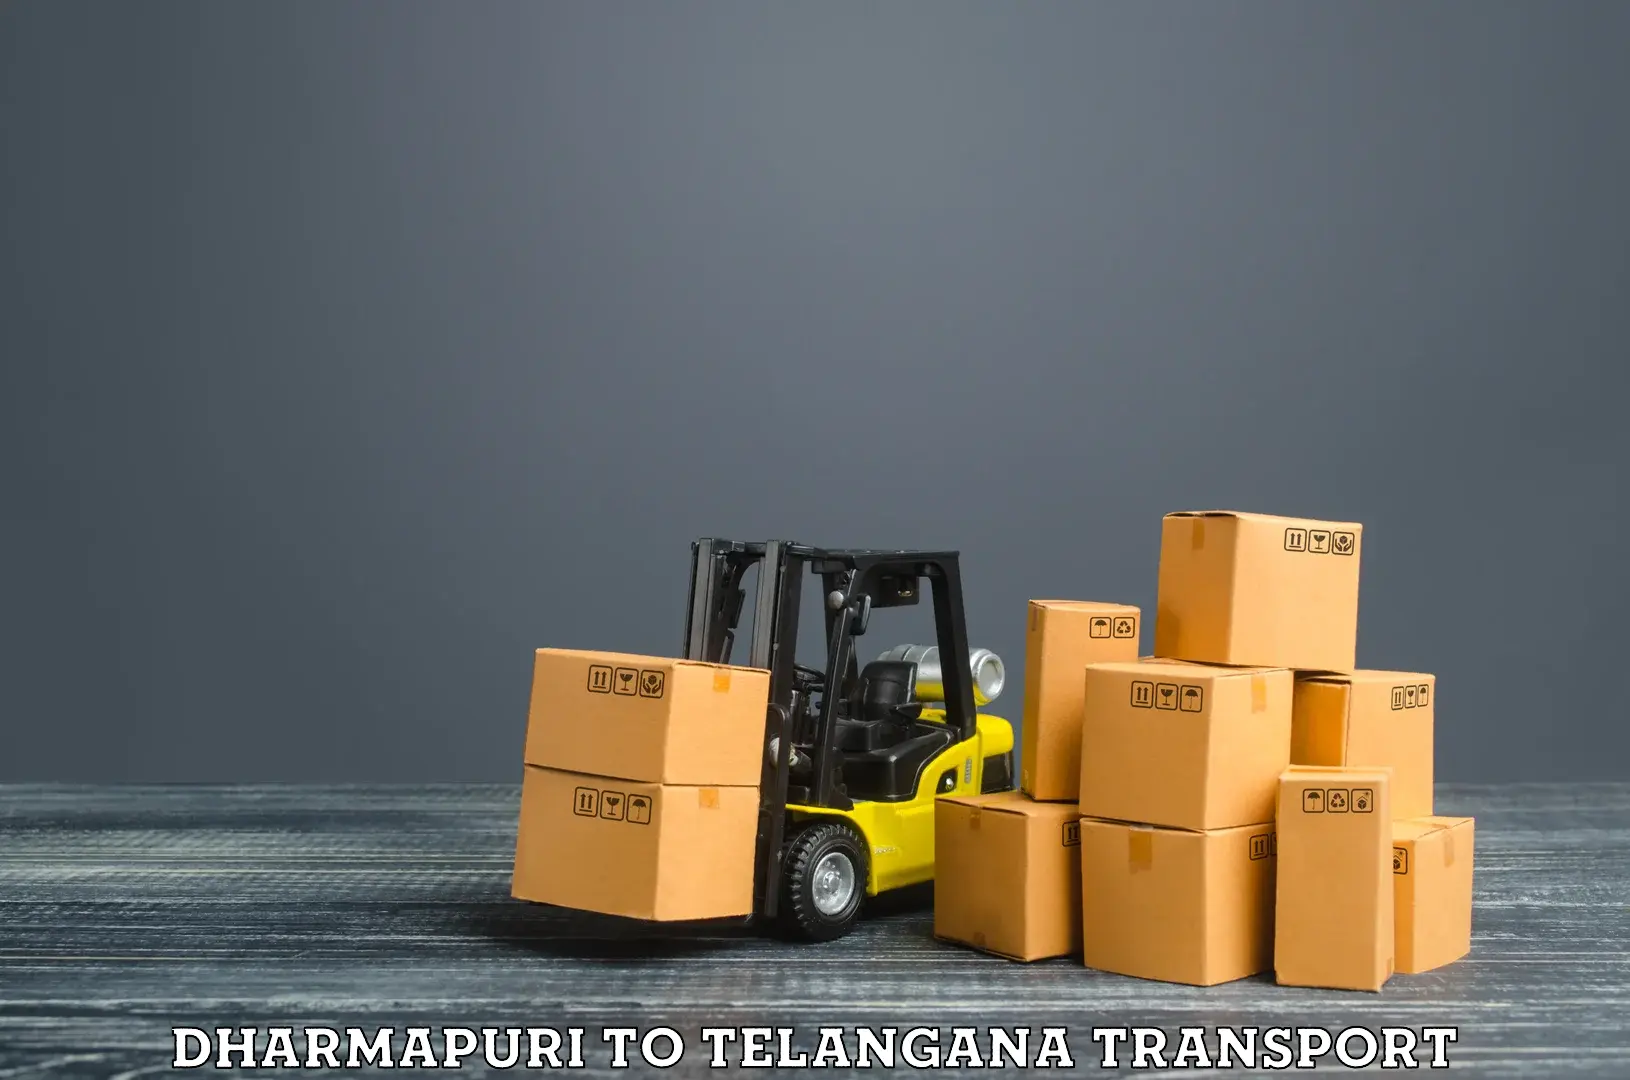 Delivery service Dharmapuri to Tadoor